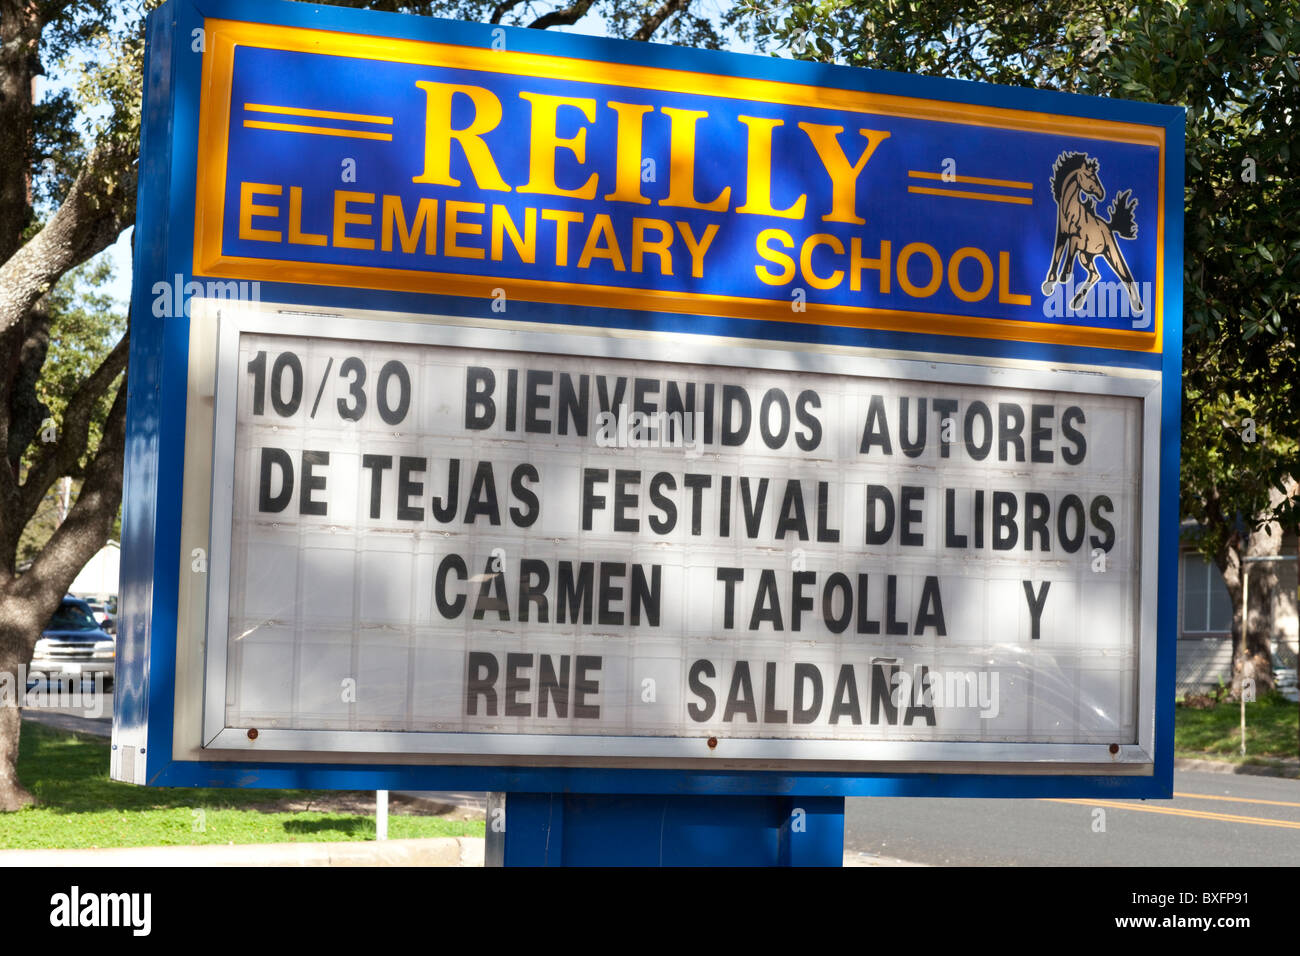 Melden Sie außen Reilly elementar in Austin begrüßt Kinder Buchautoren Carmen Tafolla und Rene Saldaña in spanischer Sprache Stockfoto